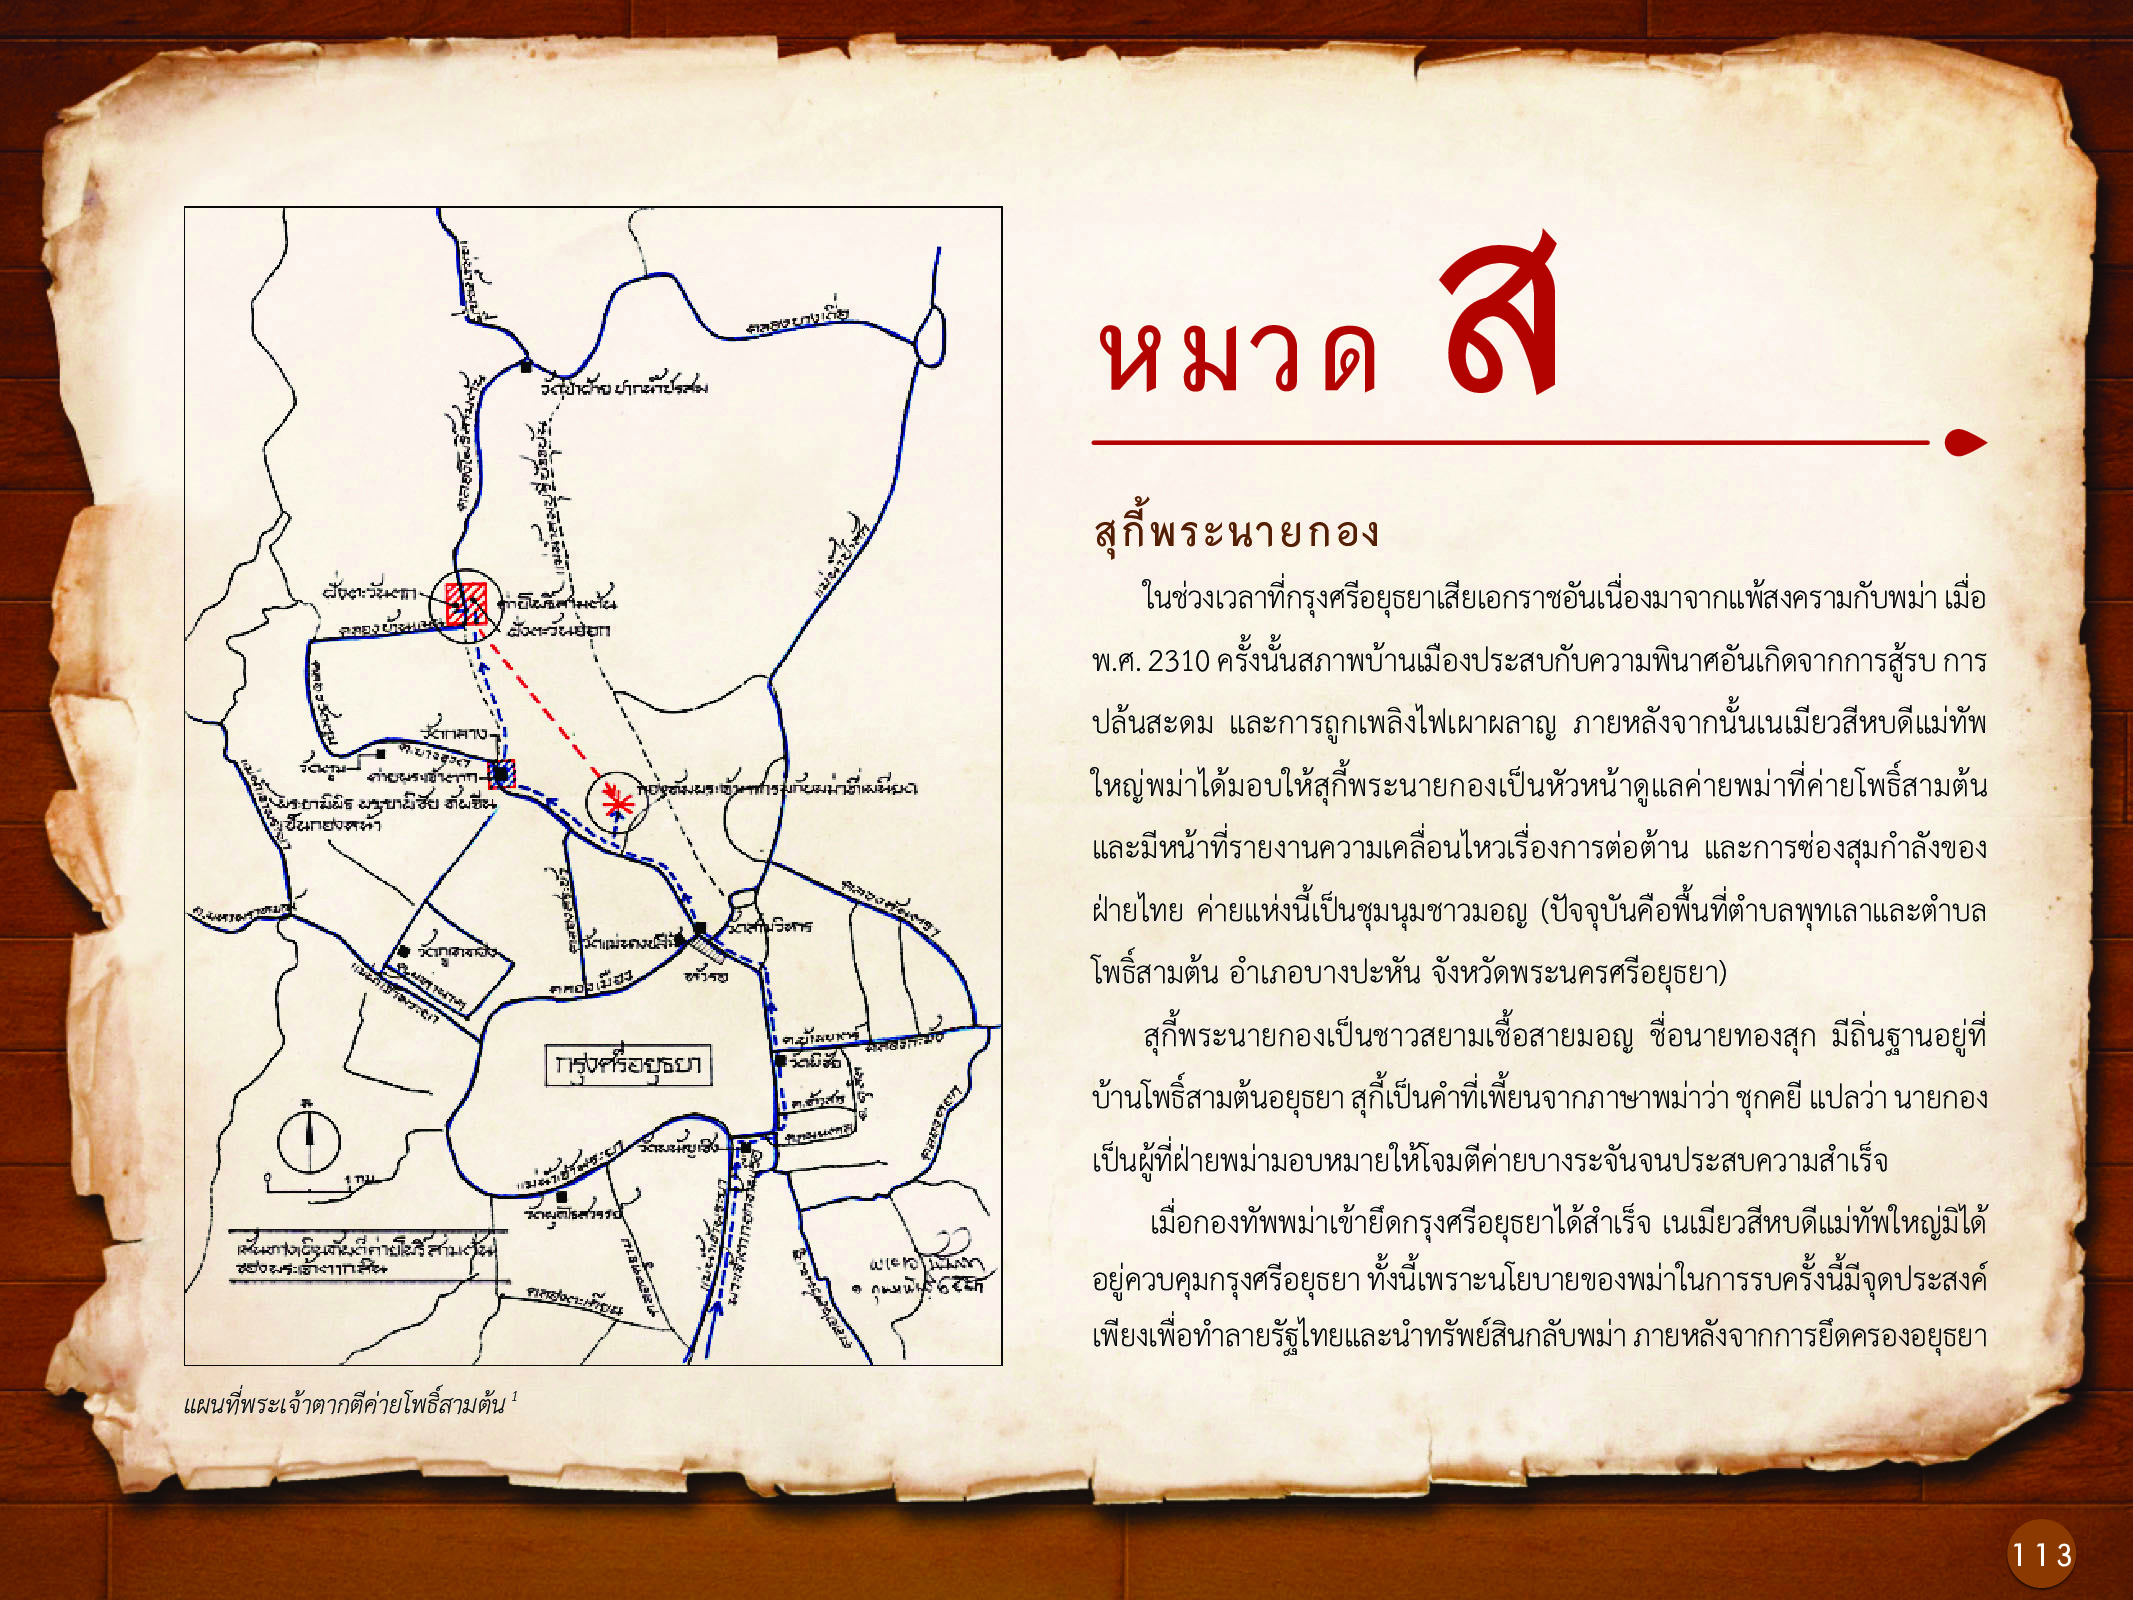 ประวัติศาสตร์กรุงธนบุรี ./images/history_dhonburi/113.jpg